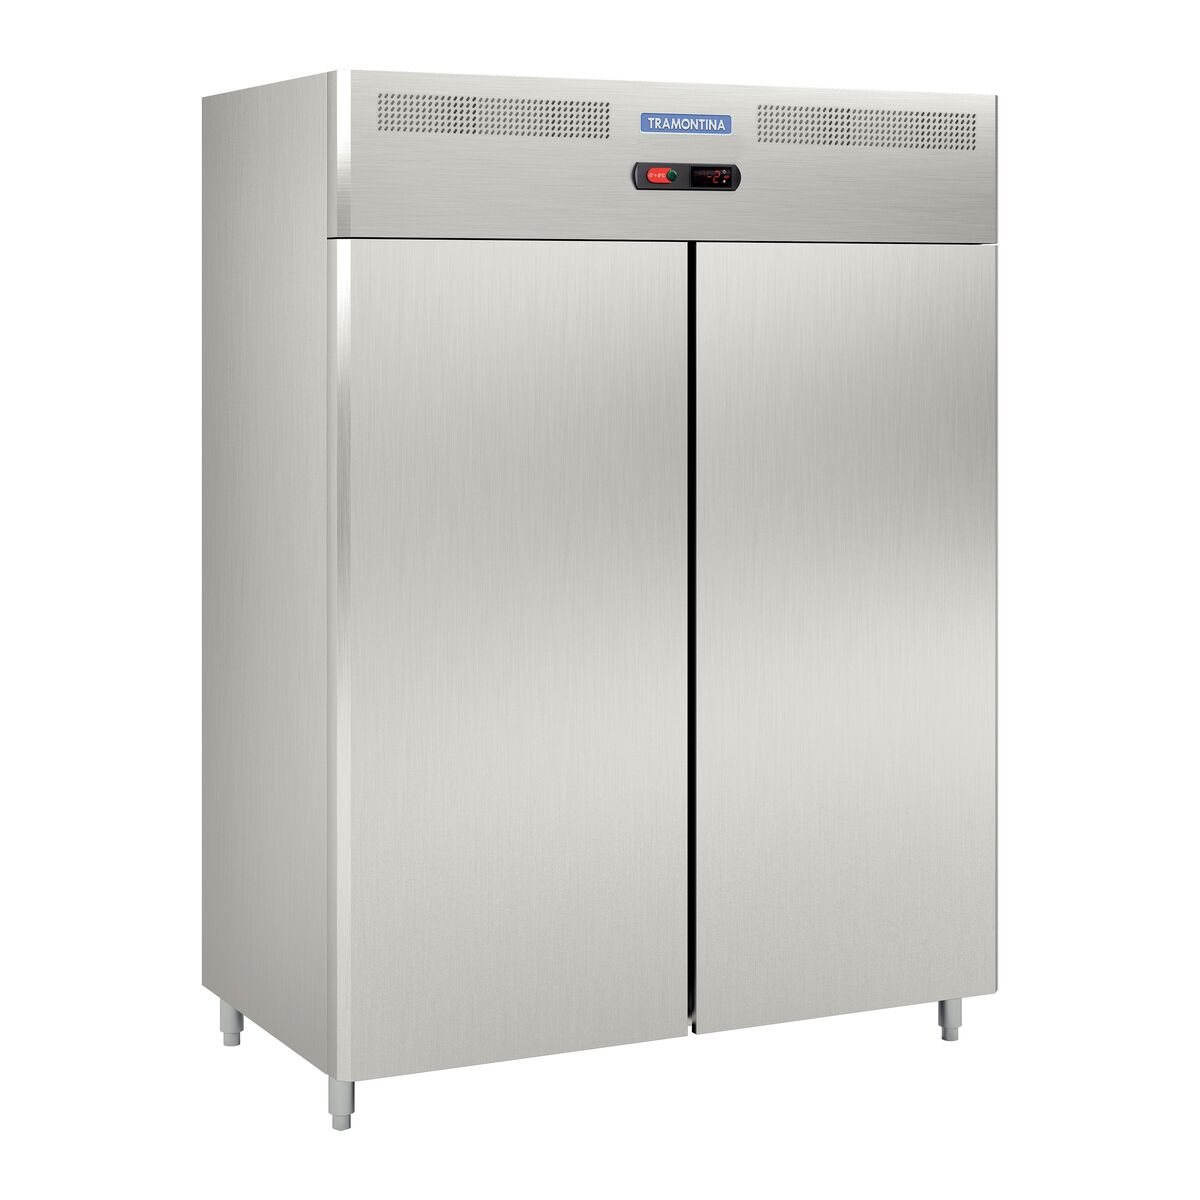 Refrigerador profesional, 2 puertas